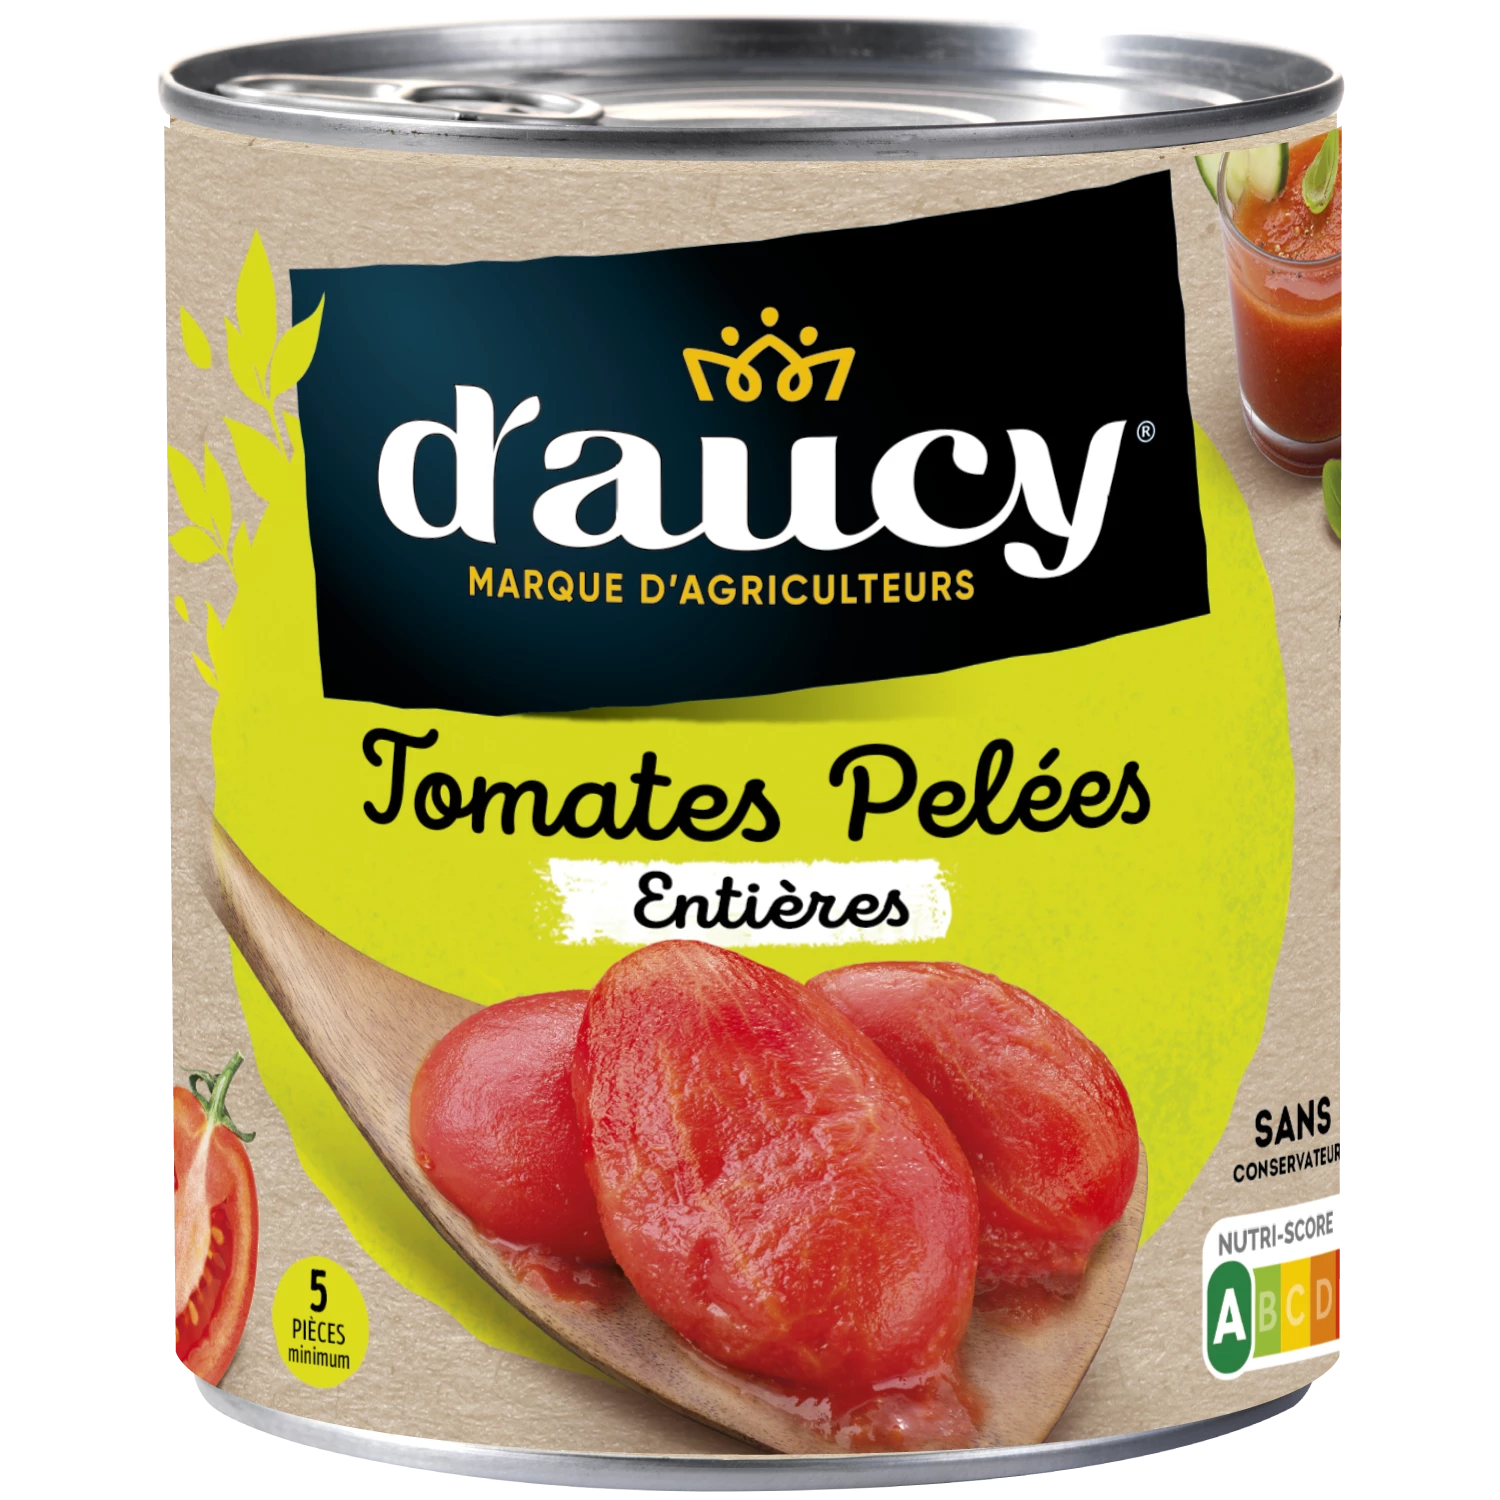 Tomate Pelées Entières; 476g - D'AUCY